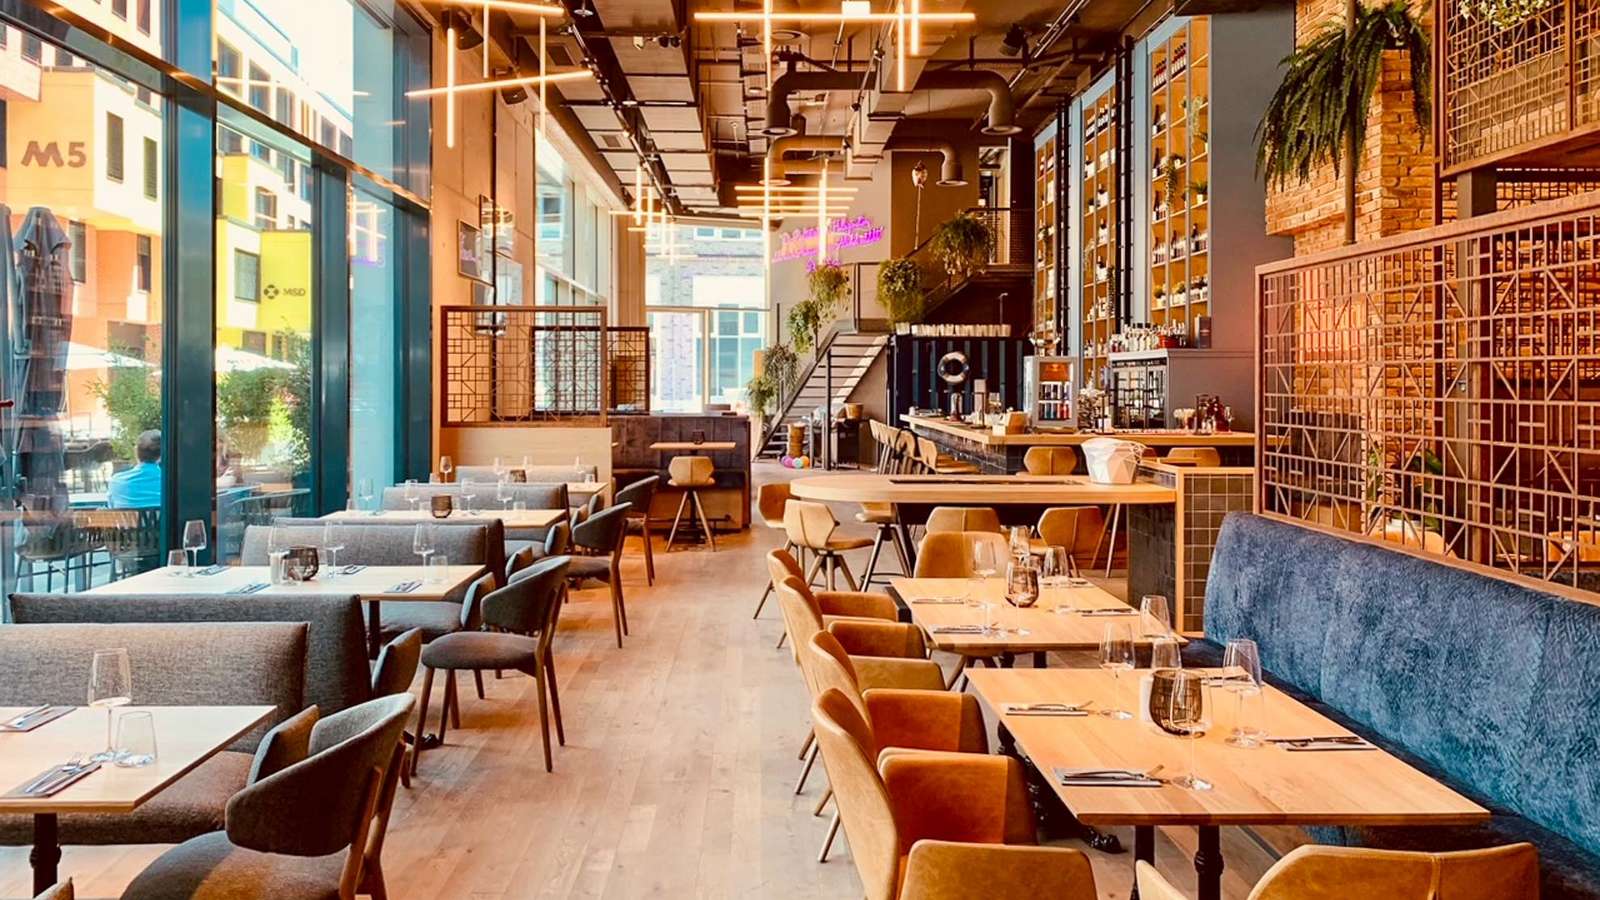 Die neue Cutlerei verbindet Fine Dining, Bar, Lounge und Kulturbühne